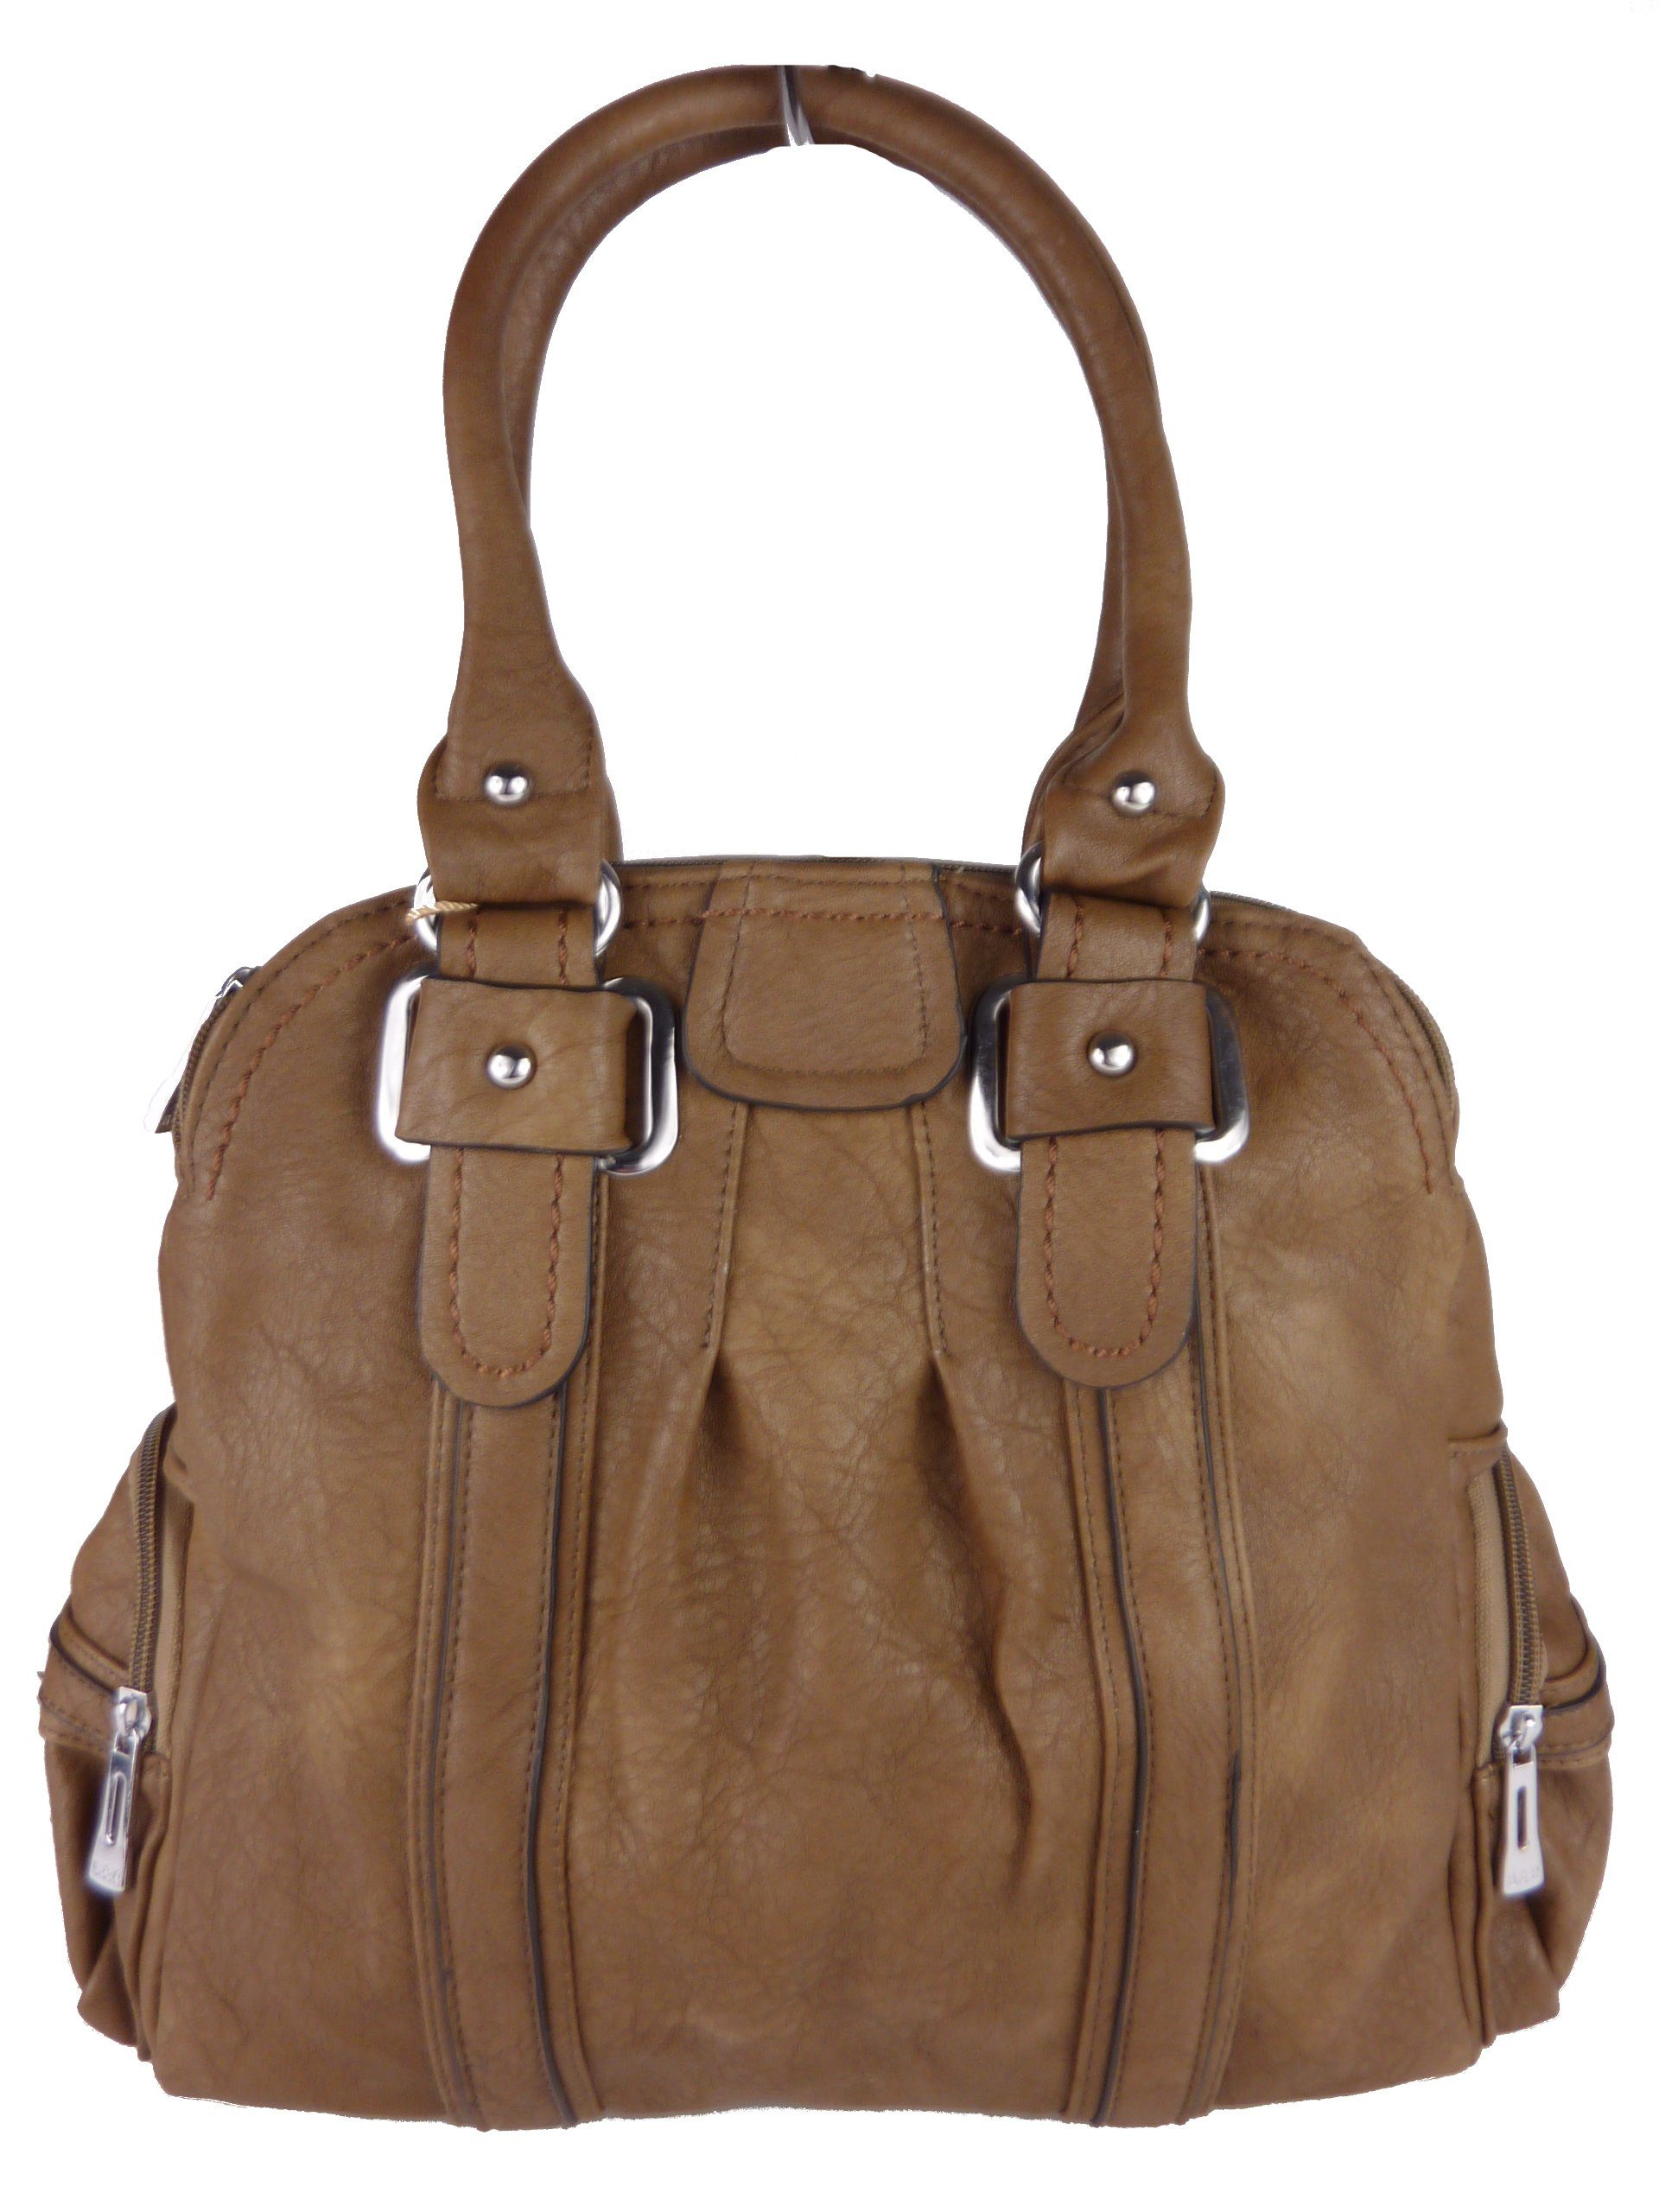 Taschen4life Handtasche klassiche Handtasche T25 mit Tragegriffen & langen Schulterriemen, Schultertasche, elegant & sportlich, Tote bag, hobo mud color